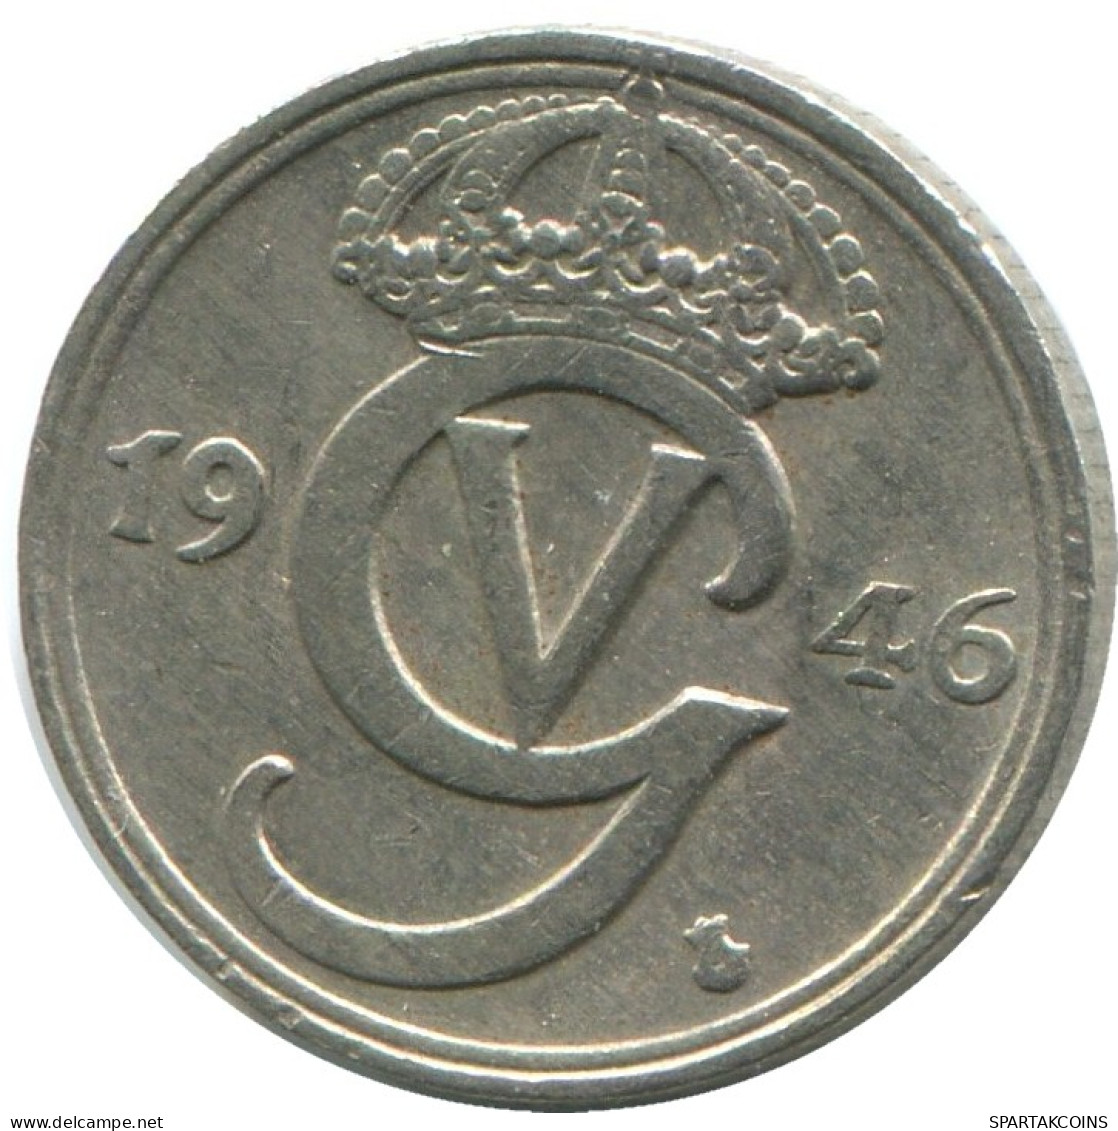 10 ORE 1946 SCHWEDEN SWEDEN Münze #AD123.2.D.A - Schweden